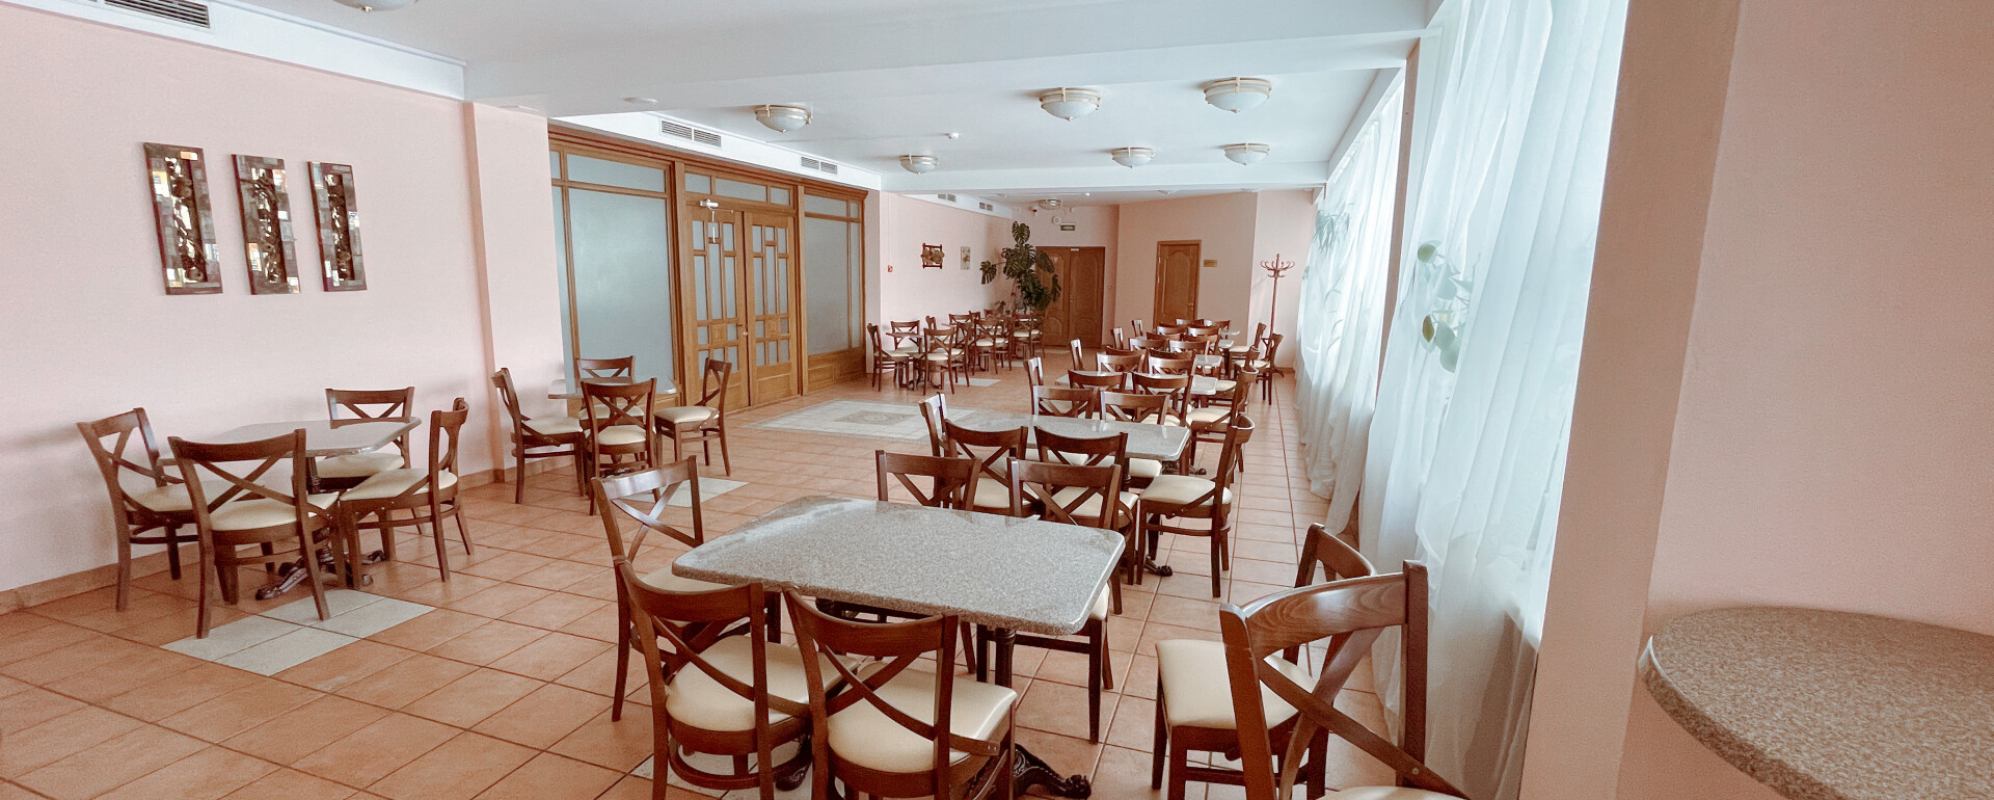 Фотографии банкетного зала ДК Железнодорожников Кафе второго этажа